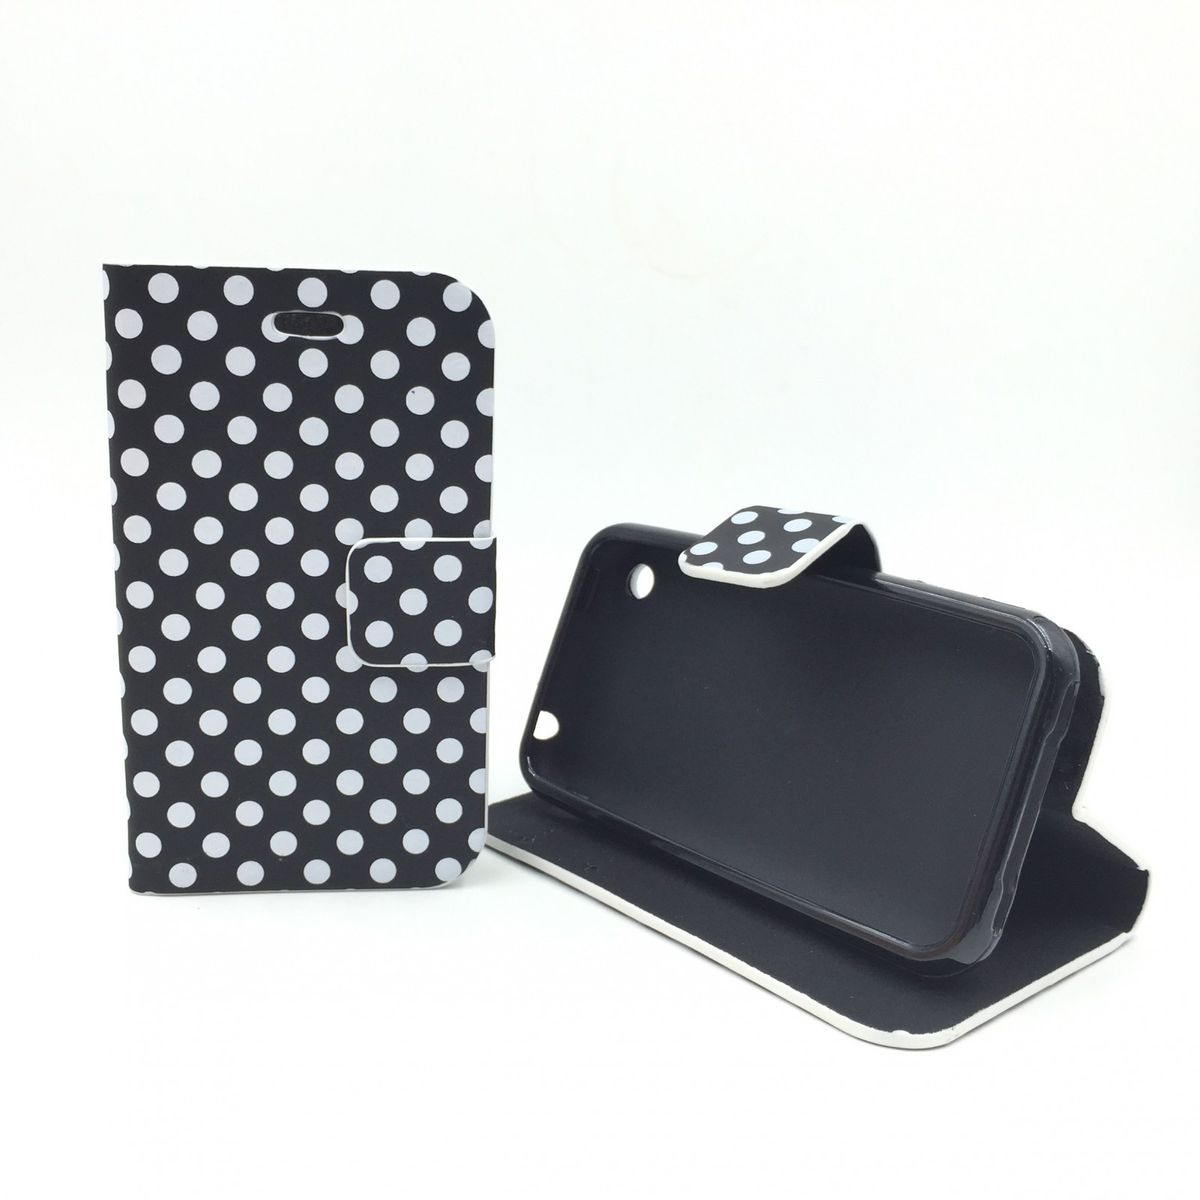 König Design Apple iPhone 3 / 3G / 3GS Handy Hülle Schutzhülle Tasche (Flip Quer) Wallet Rockabilly Etui Schutz Case Cover Bumper Standfunktion Schwarz / Weiß Gepunktet